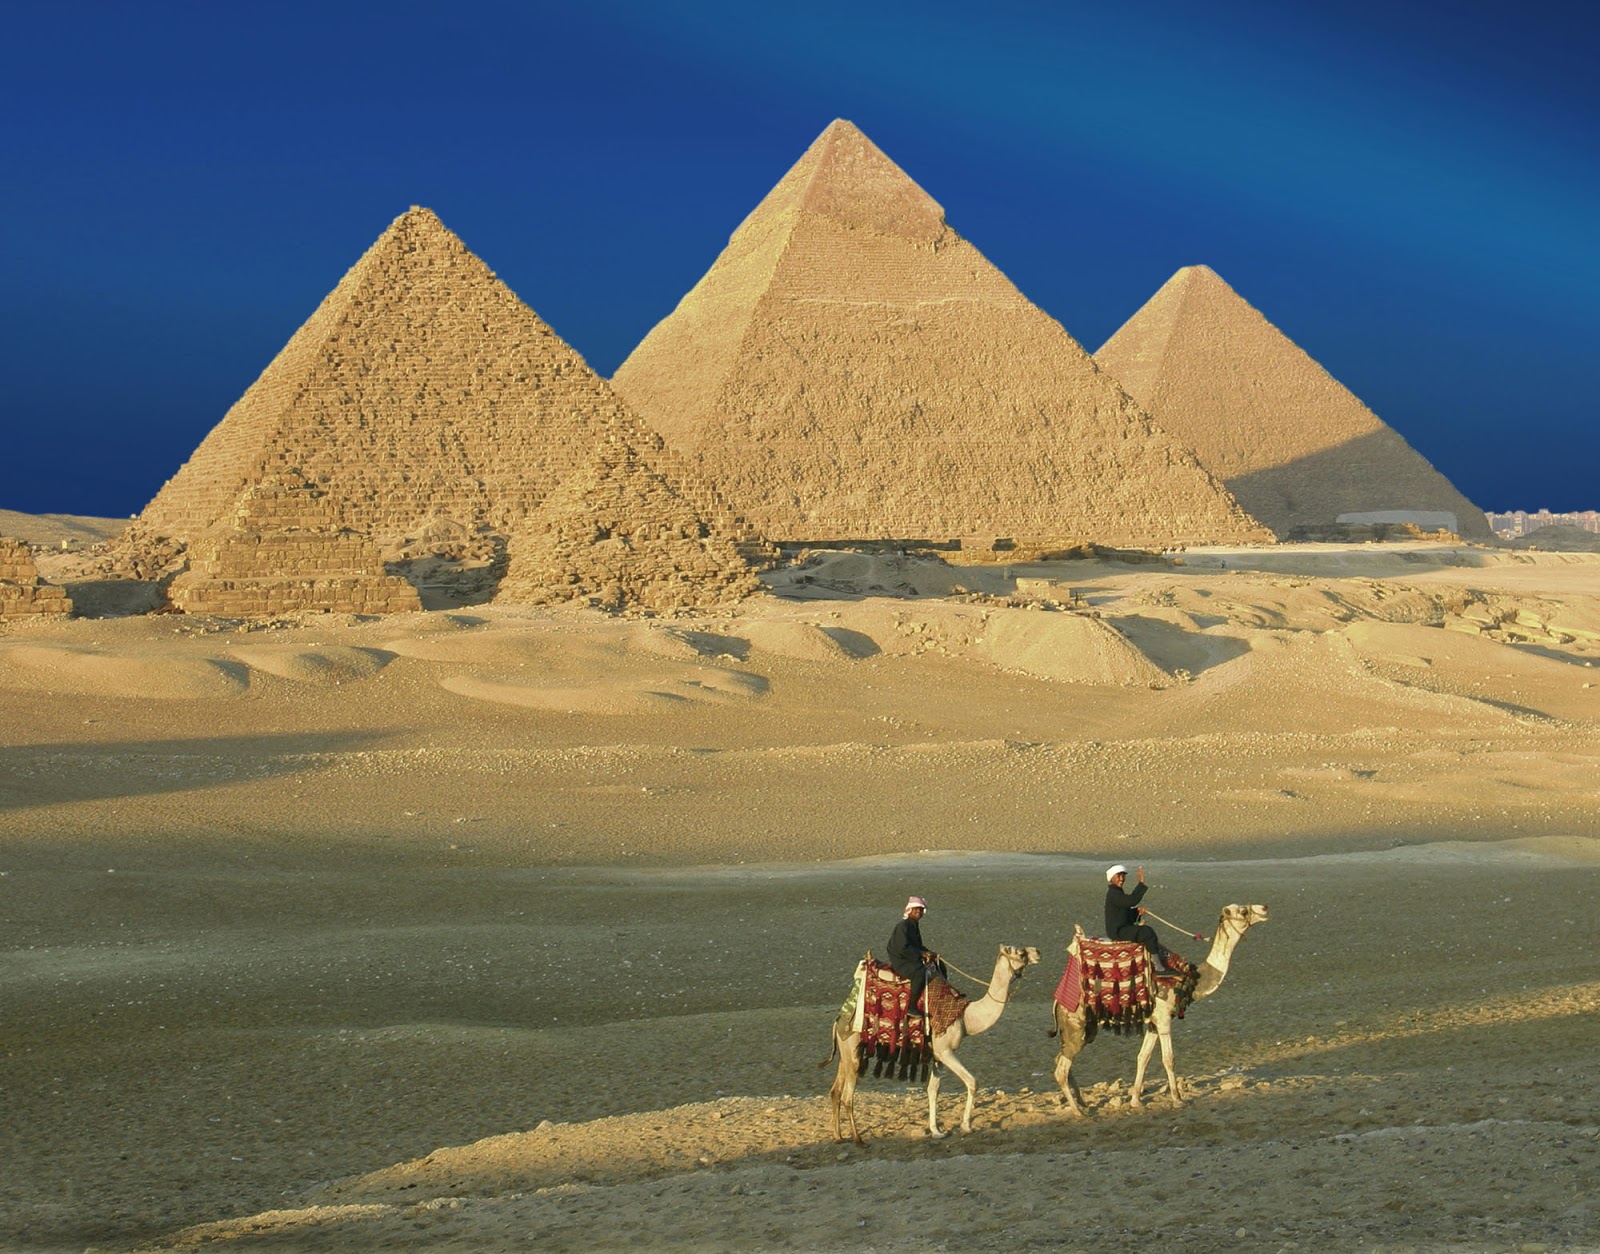 Πυραμίδα: Μια ελληνική λέξη με μυστηριώδη σημασία